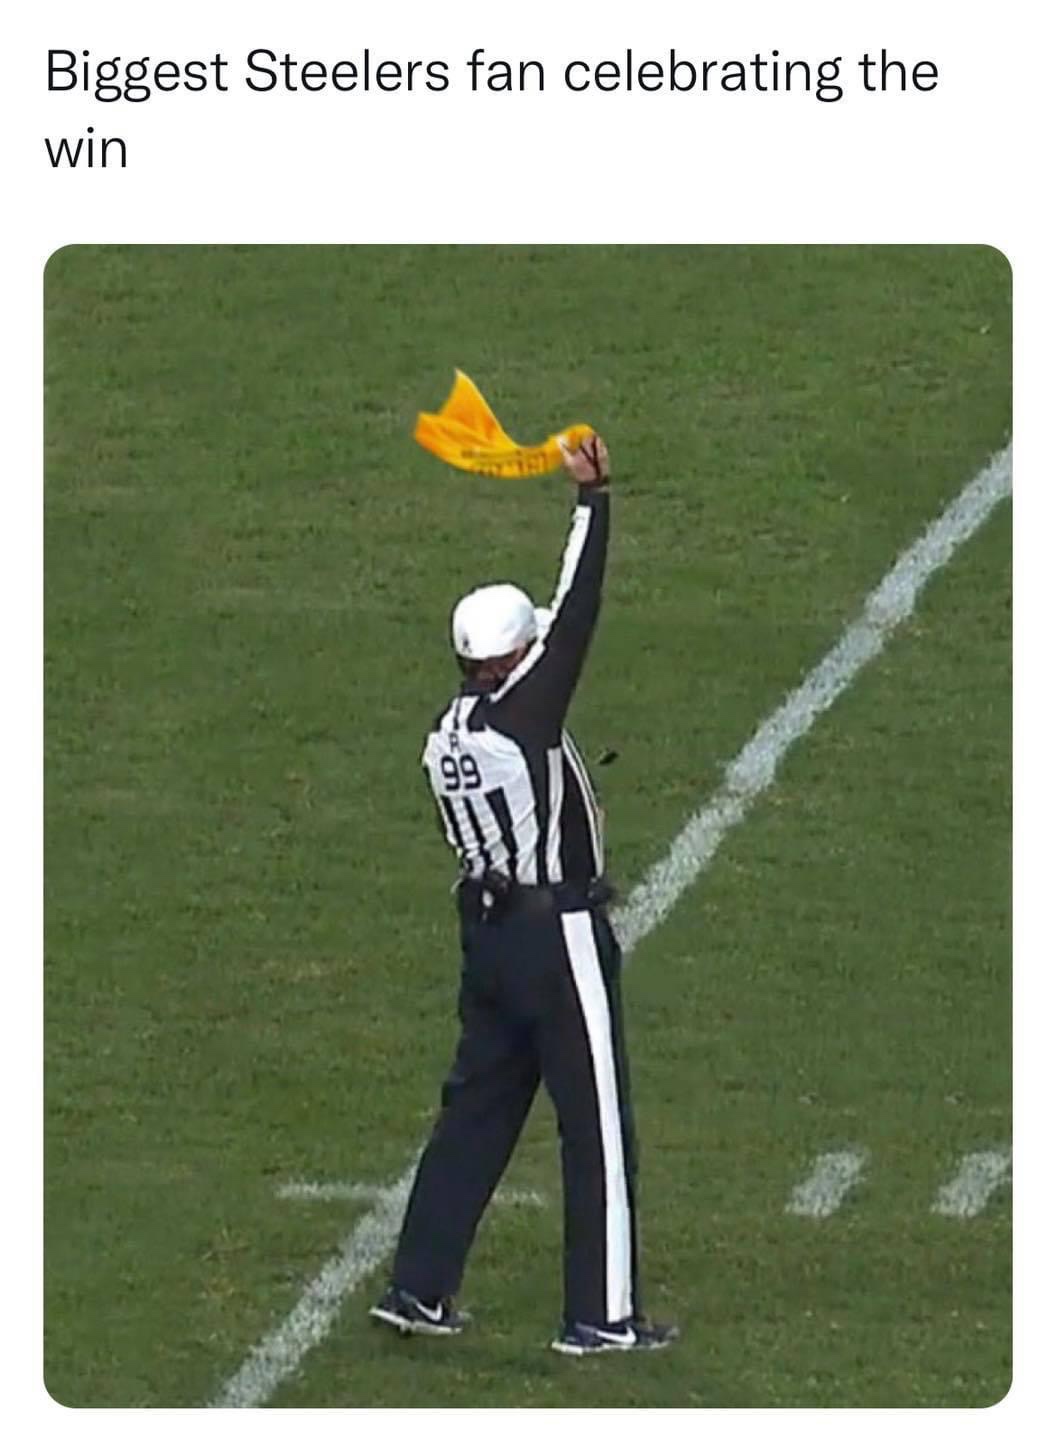 Biggest Steelers fan celebrating the win meme